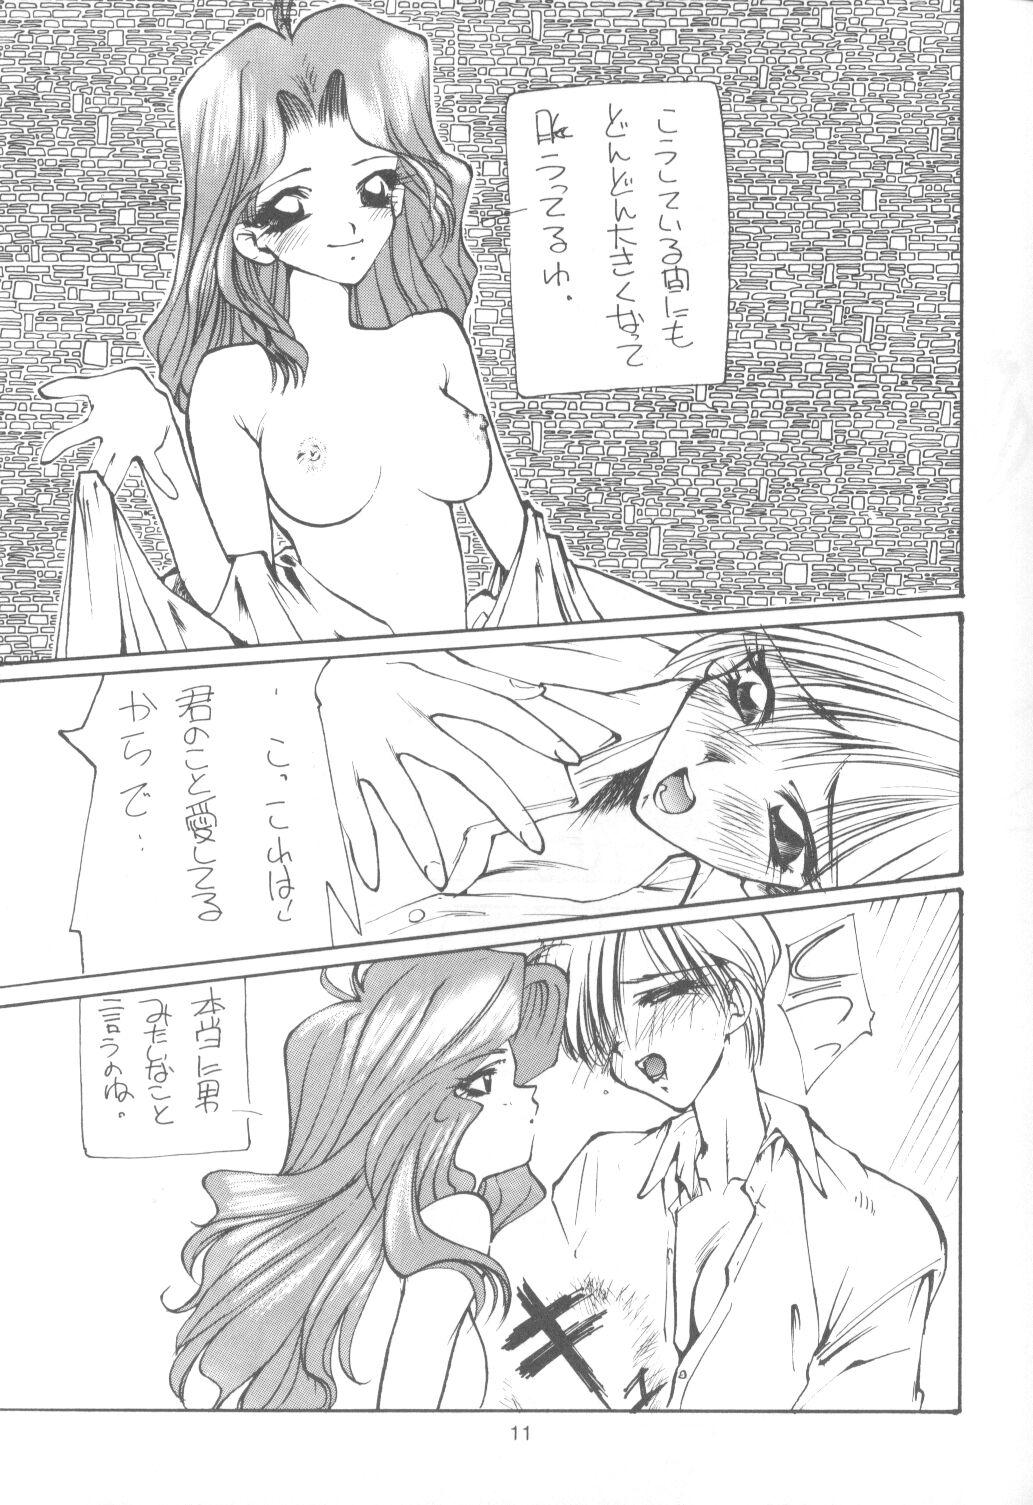 Polla Tabeta Kigasuru 9 - Sailor moon Gay Public - Page 10